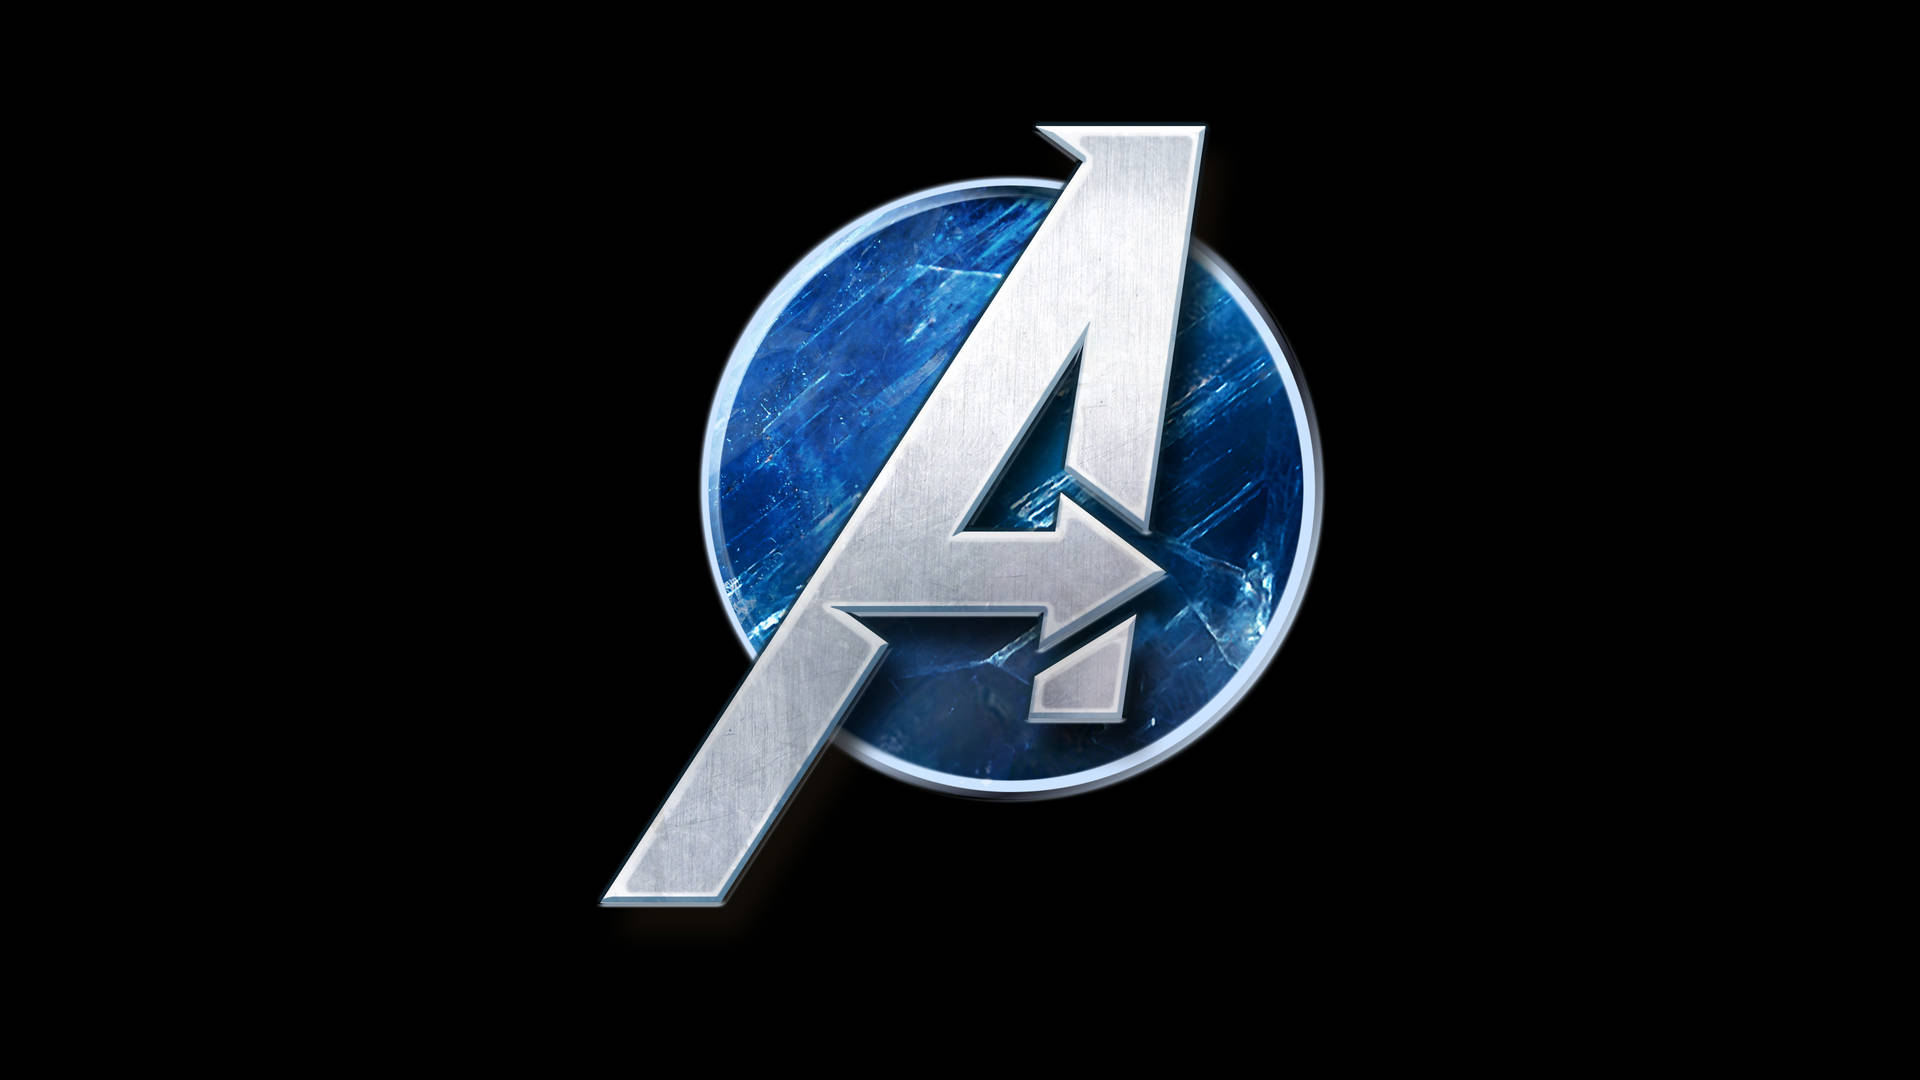 Tham gia vào thế giới game của Avengers với hình nền siêu phẩm Avengers Gaming Logo. Tải về ngay để đem đến sự bùng nổ cho màn hình của bạn!